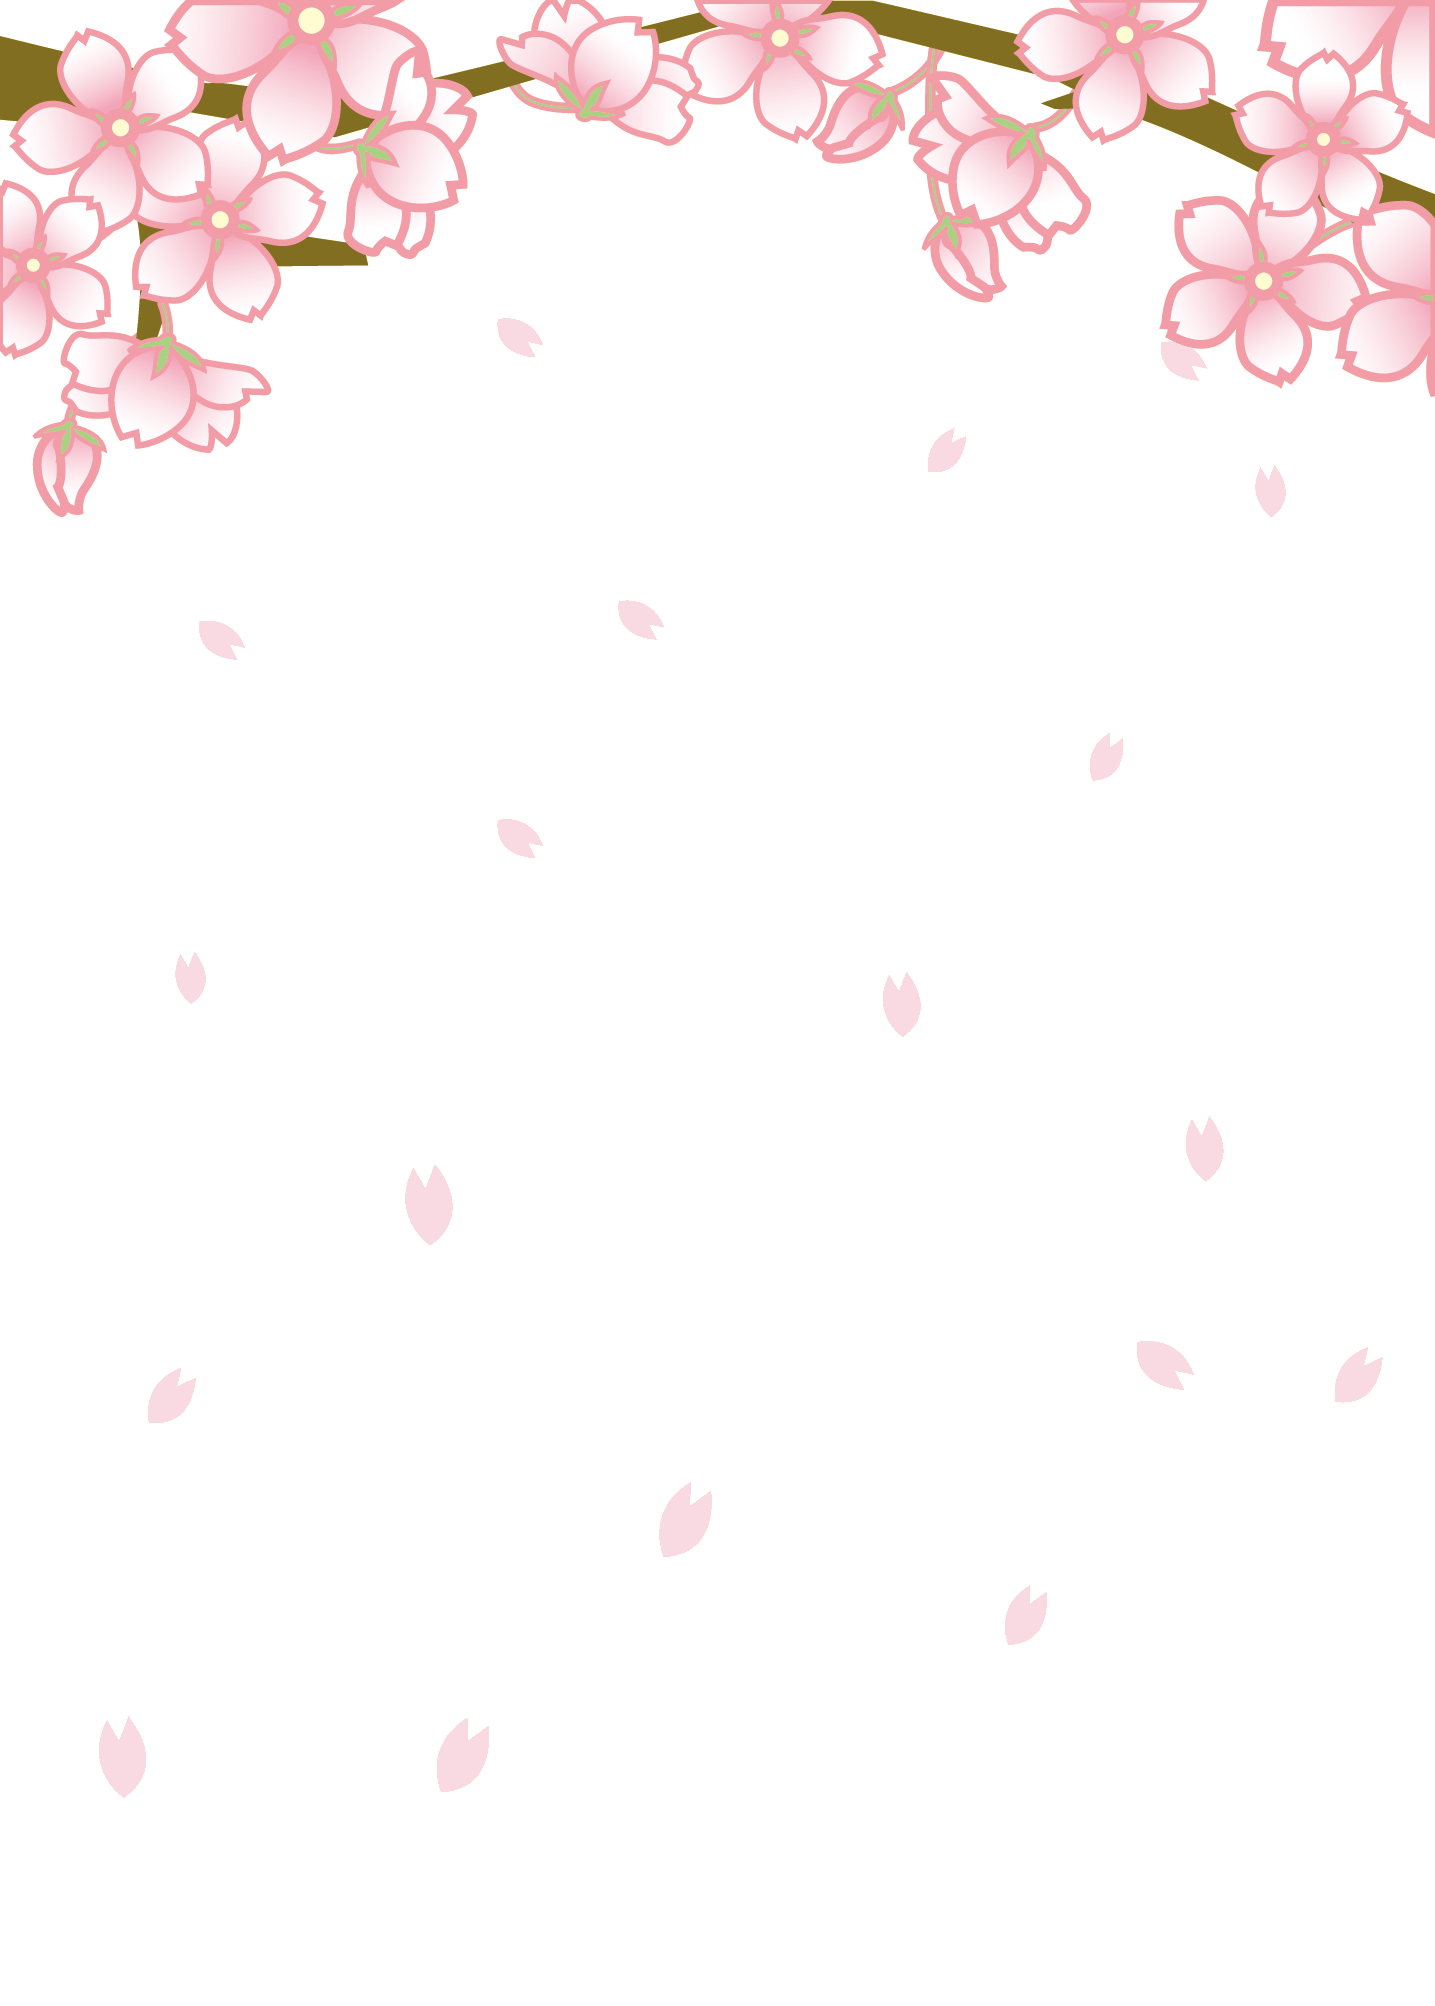 さくら 桜 のイラスト 画像no 014 舞い散る桜 壁紙にも 無料のフリー素材集 百花繚乱